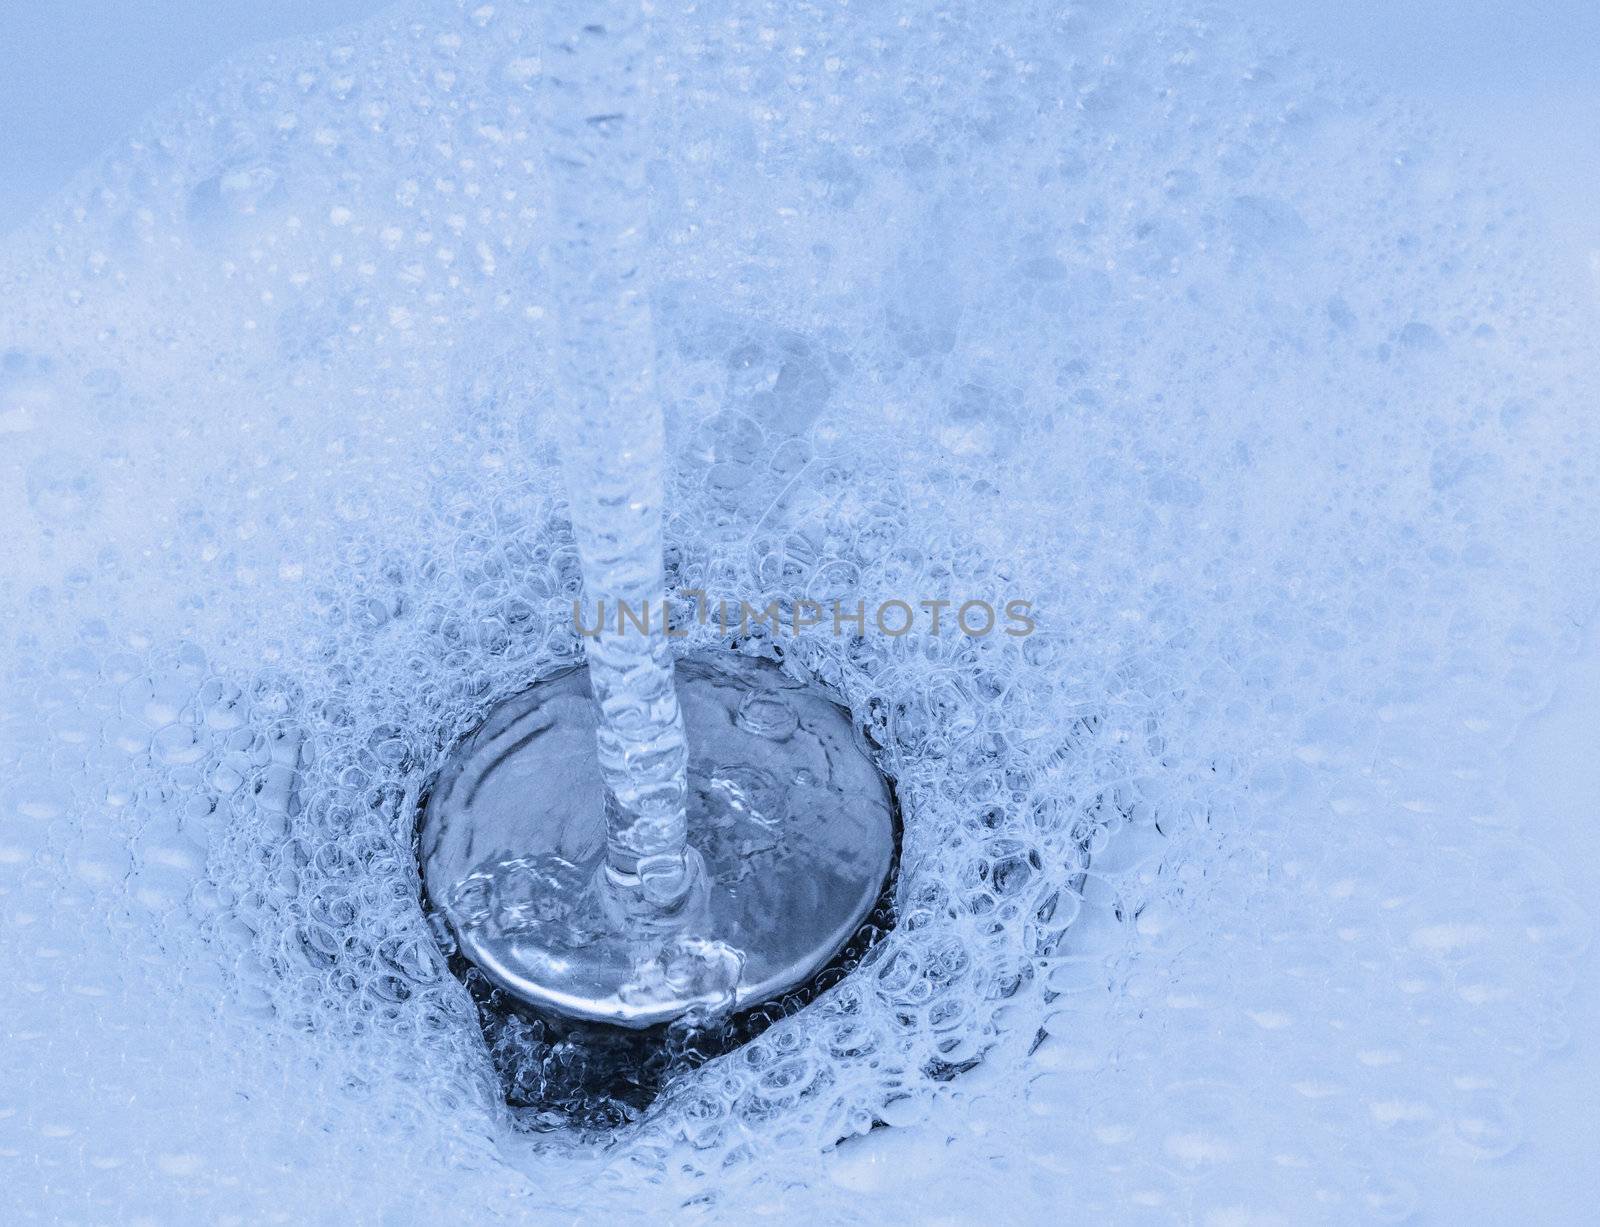 Blue Foam background, photo taken in a bathtube